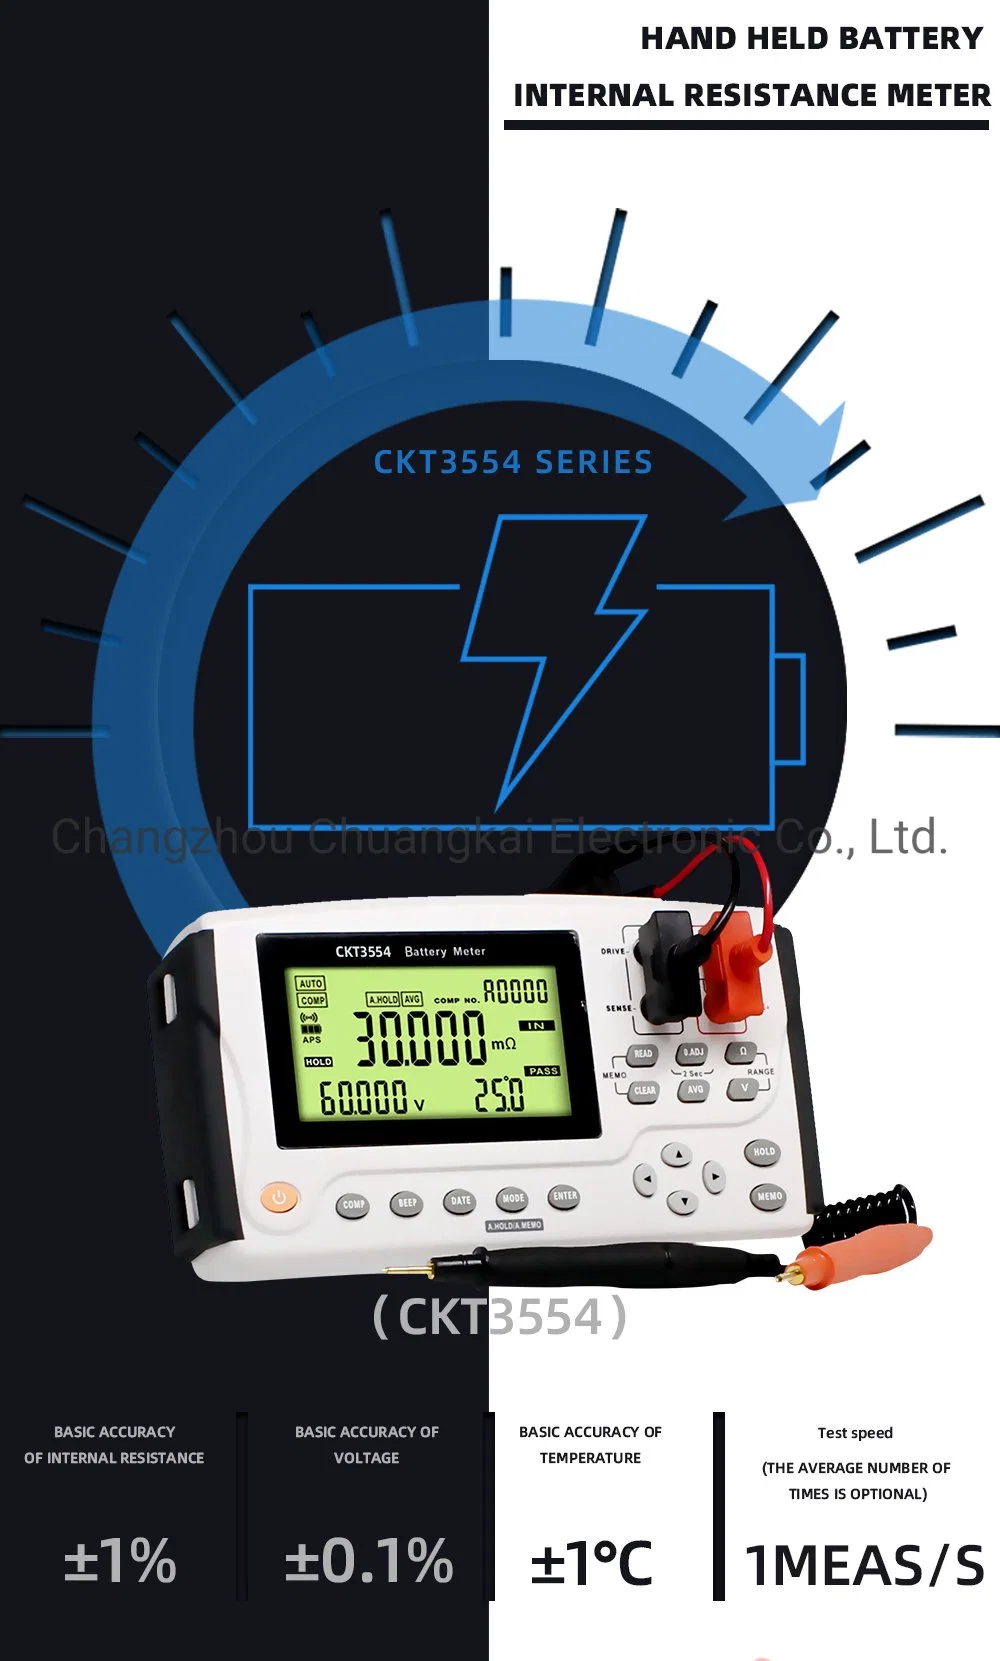 Ckt3554n Digital Battery Tester Meter for UPS Online Measurement Under Working Status